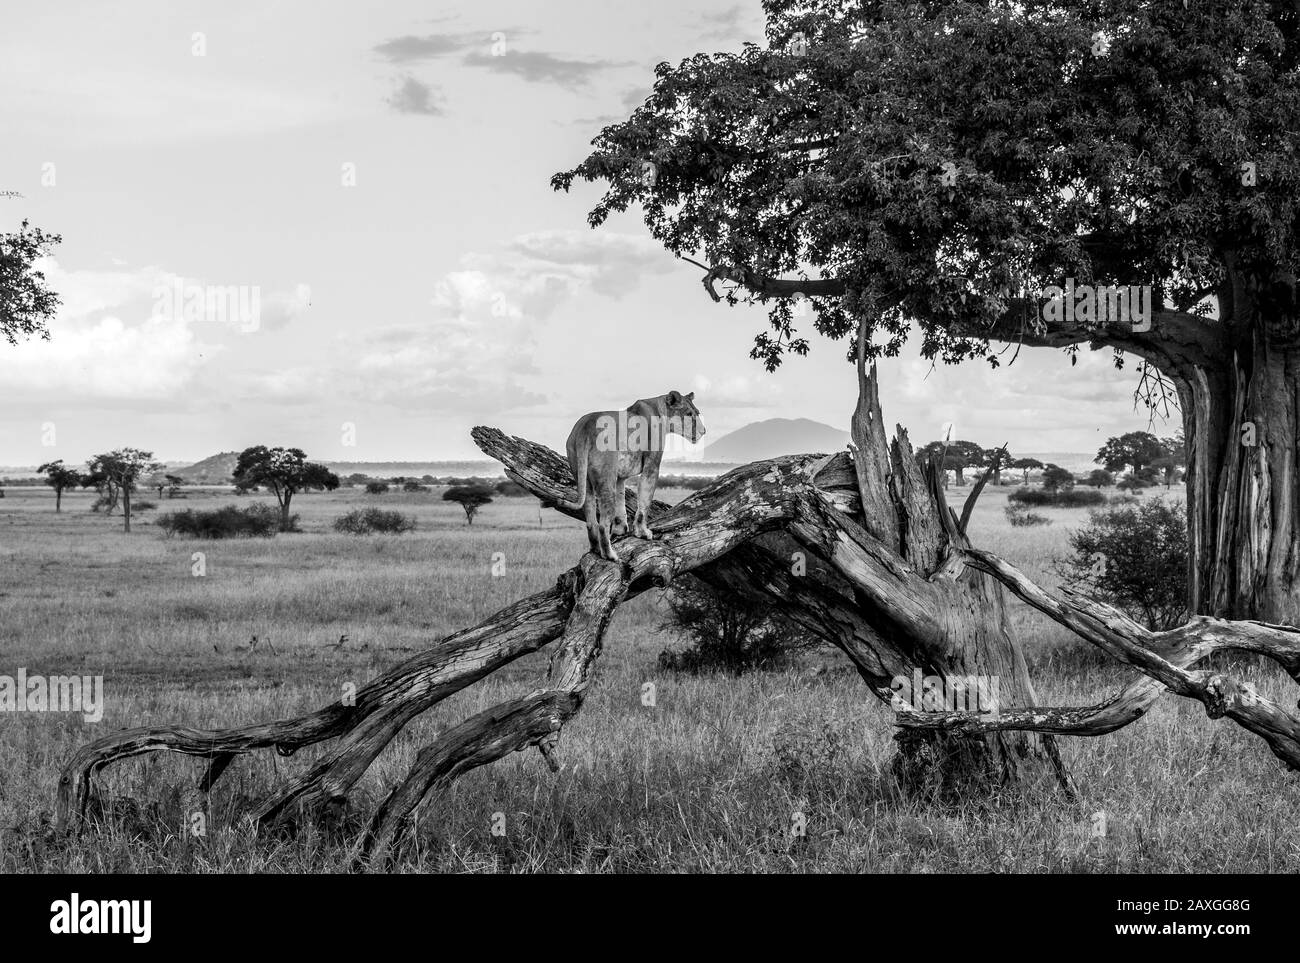 Image en noir et blanc d'un jeune Lionne sur la savane africaine. Banque D'Images